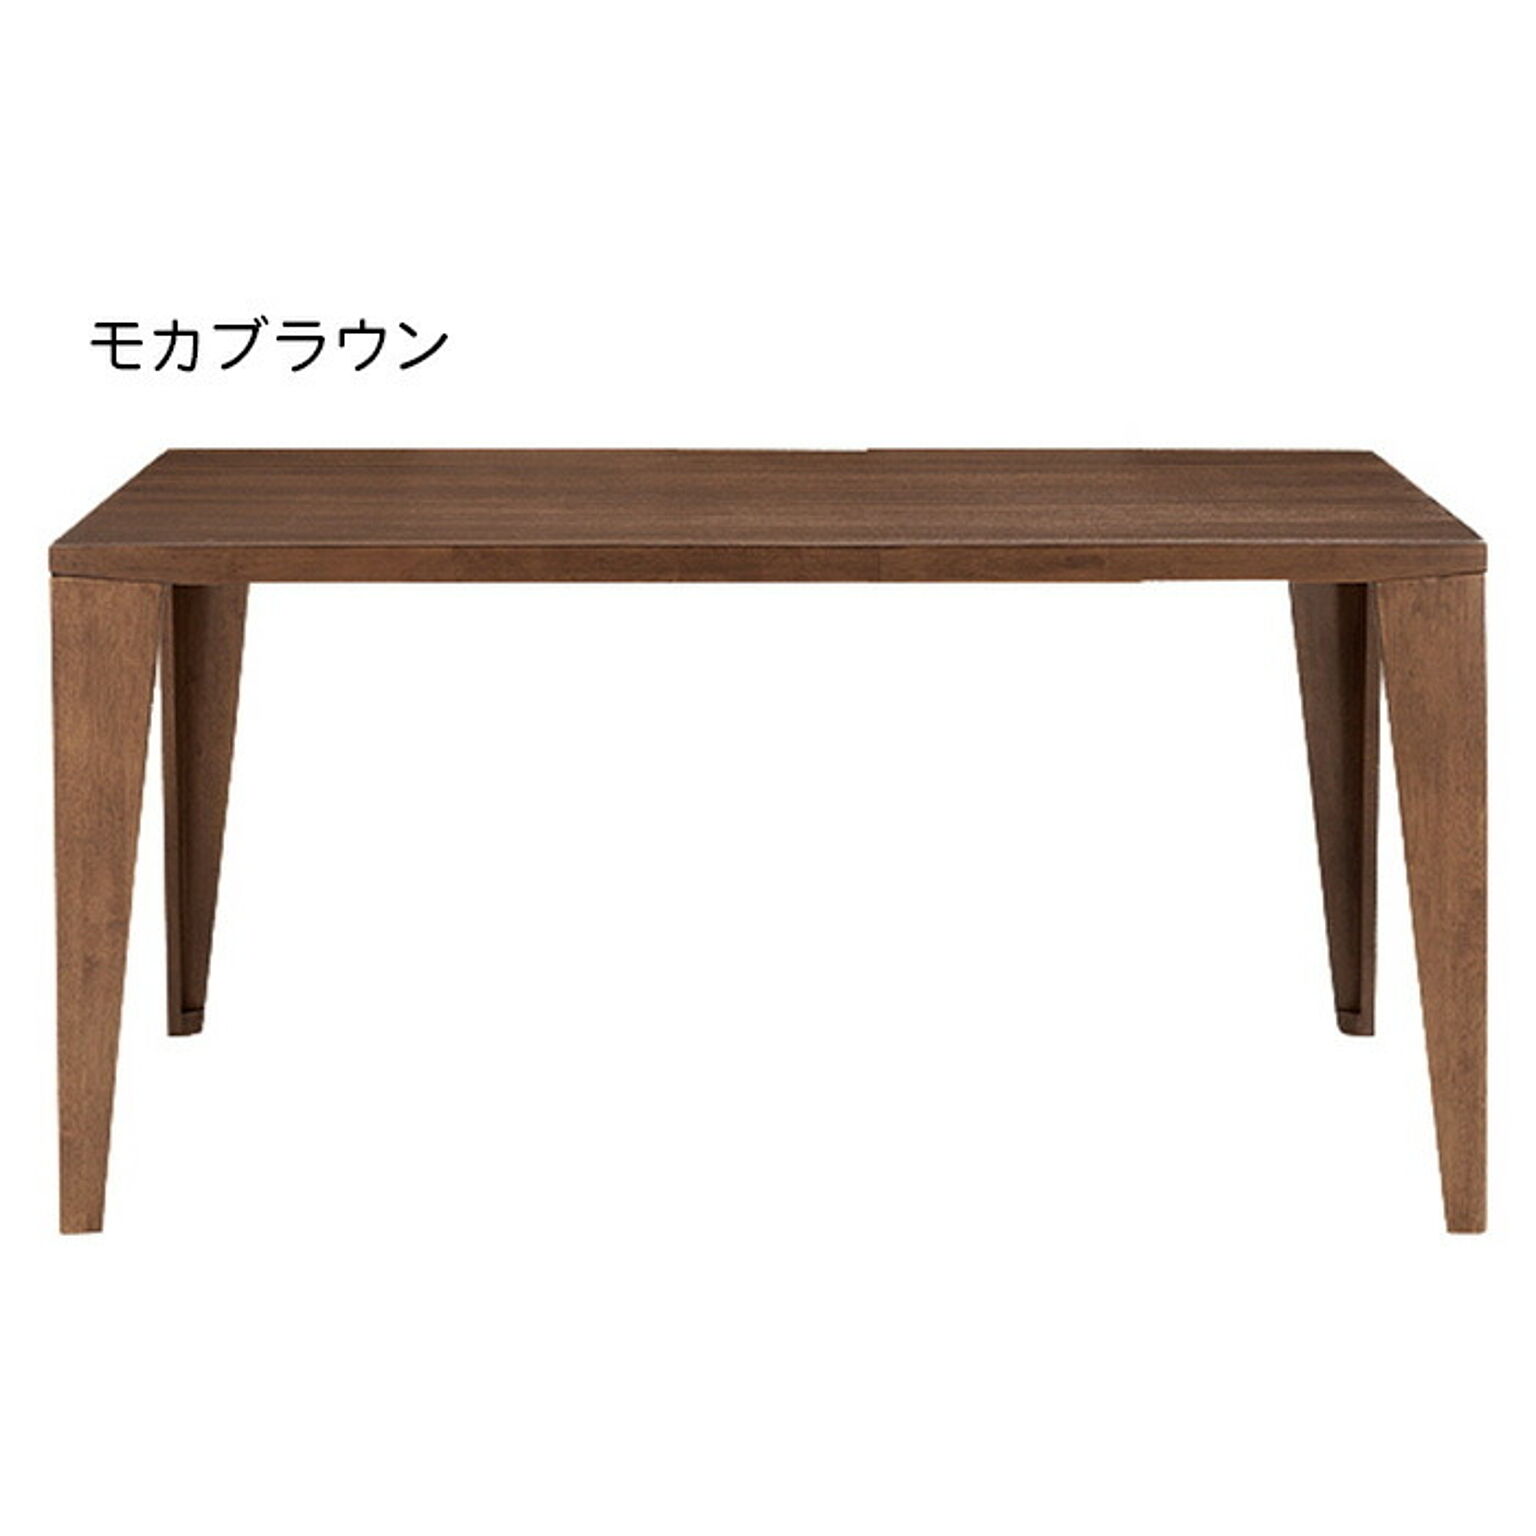 ダイニングテーブル うんこちゃん家具 - ダイニングテーブル